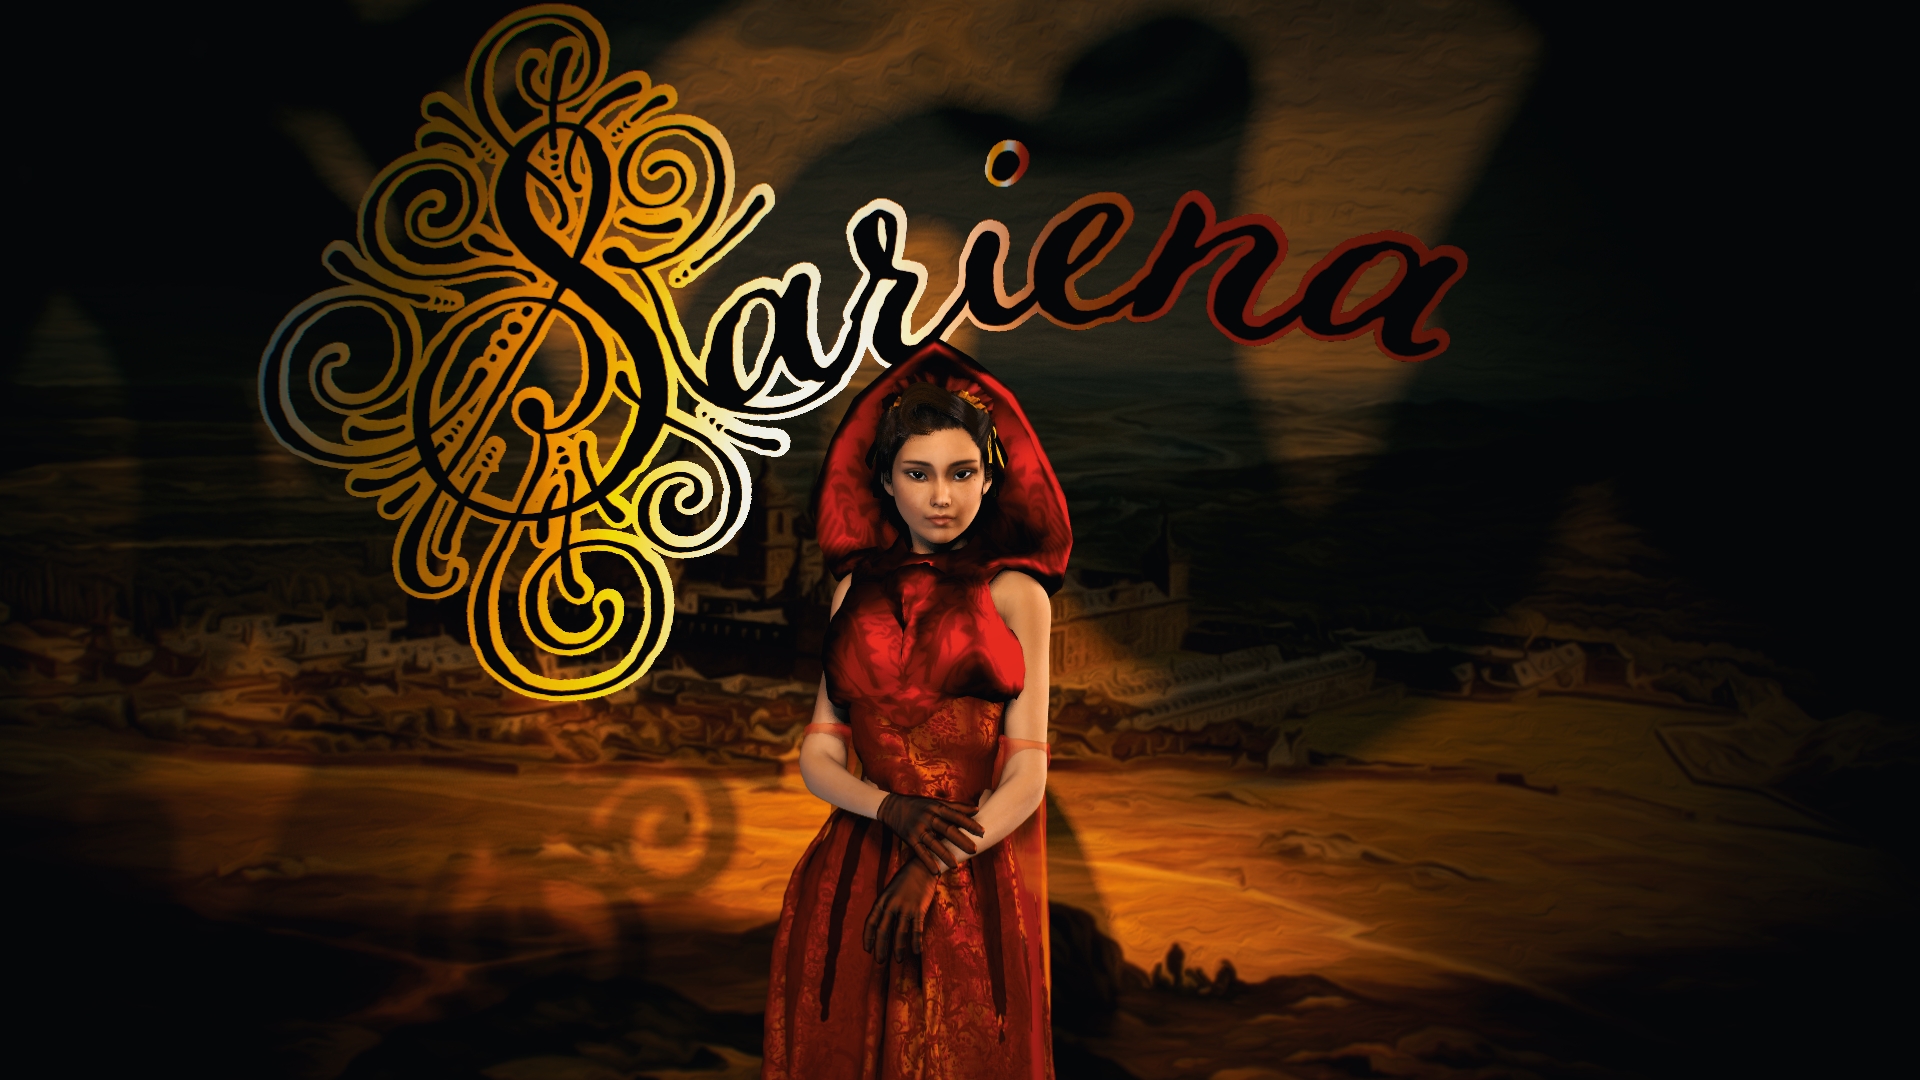 Sariena of Spain